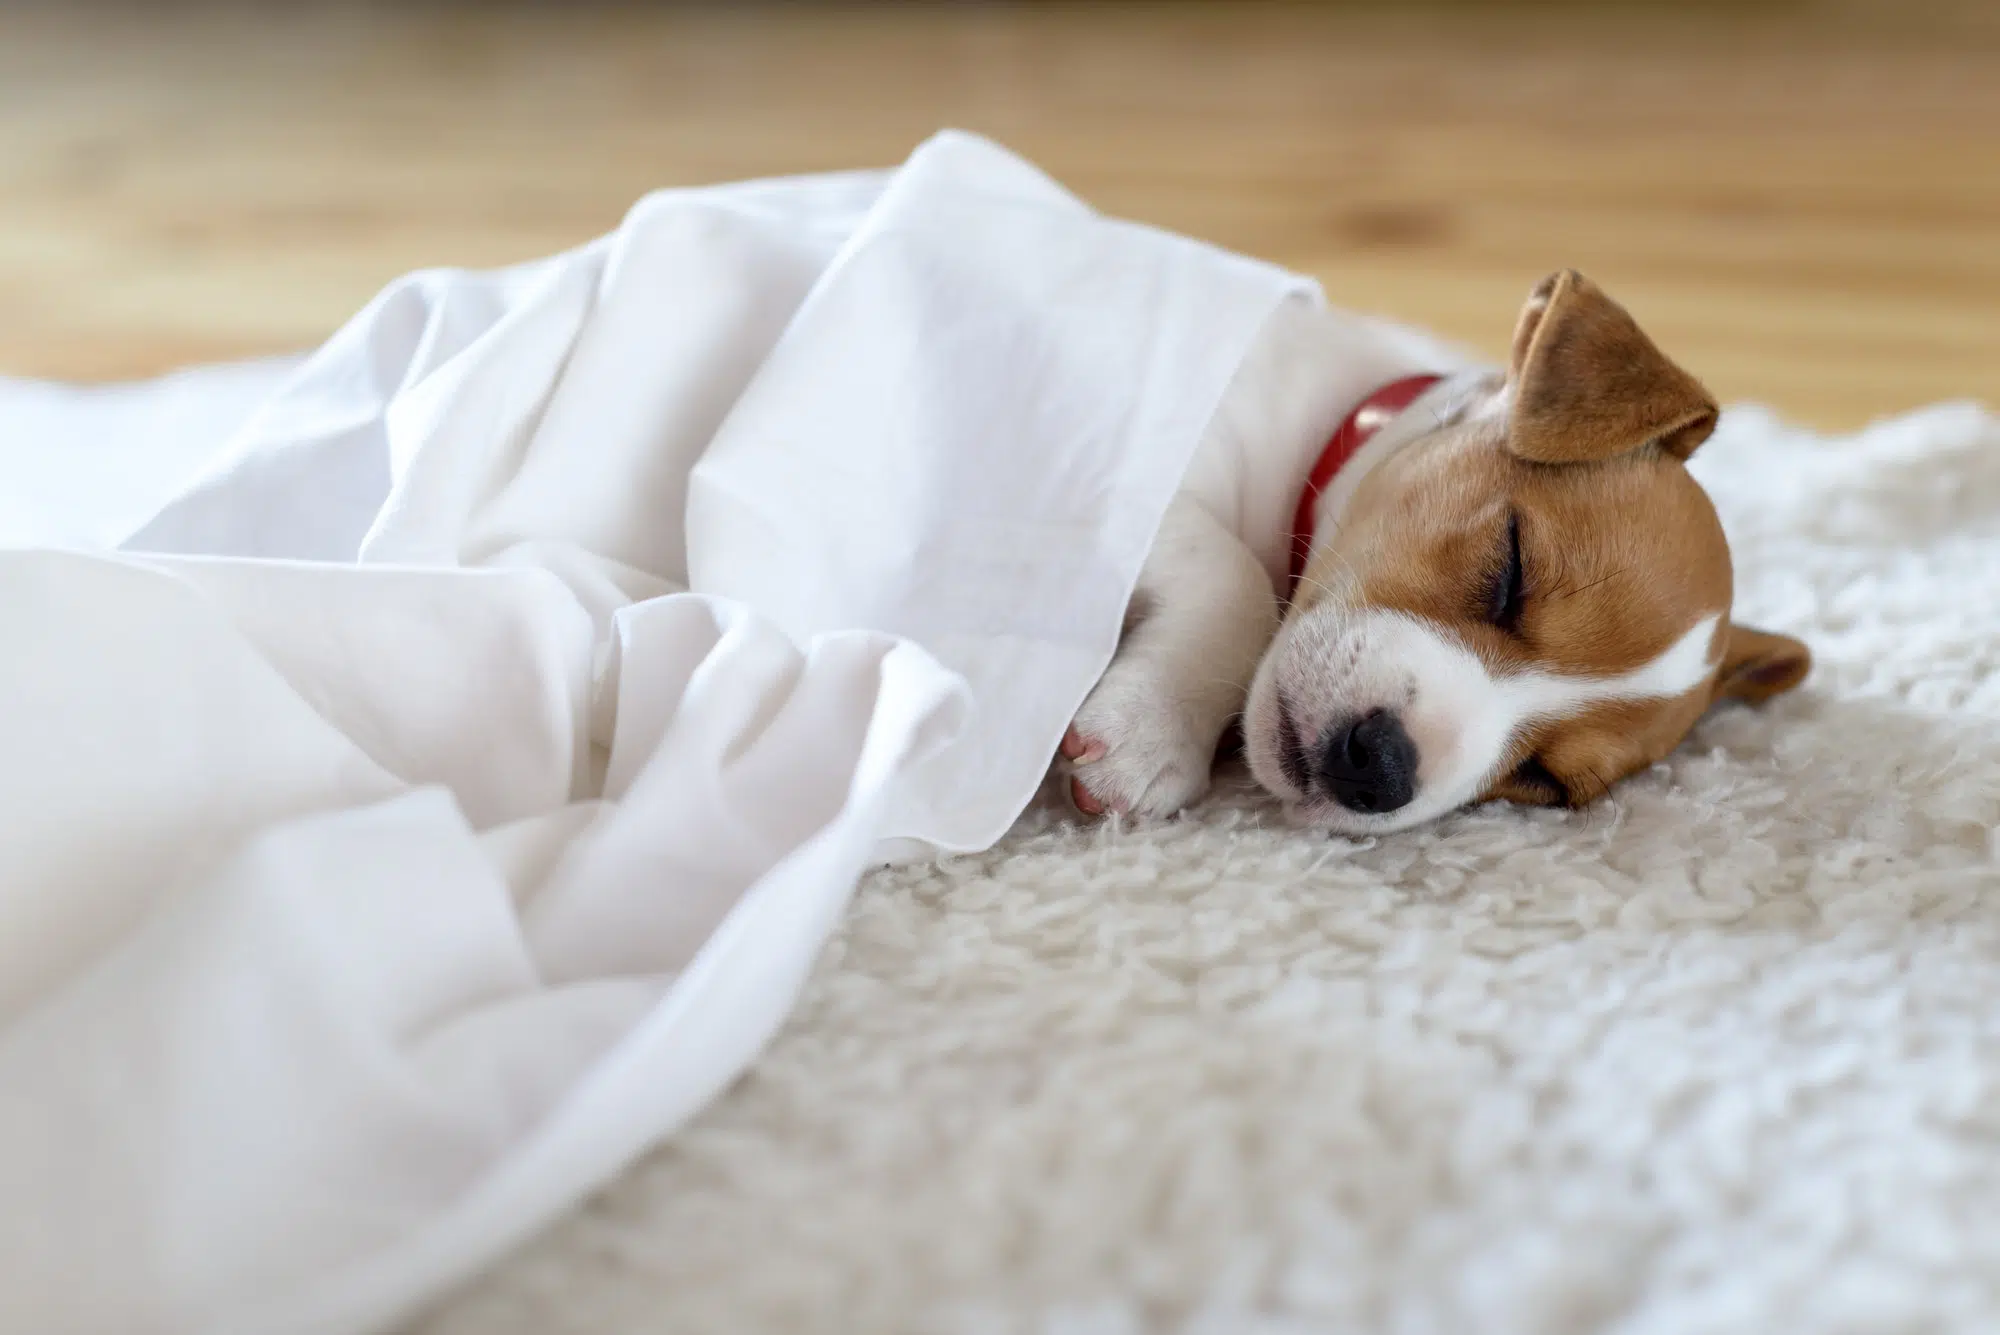 Pourquoi les chiens dorment-ils beaucoup ?